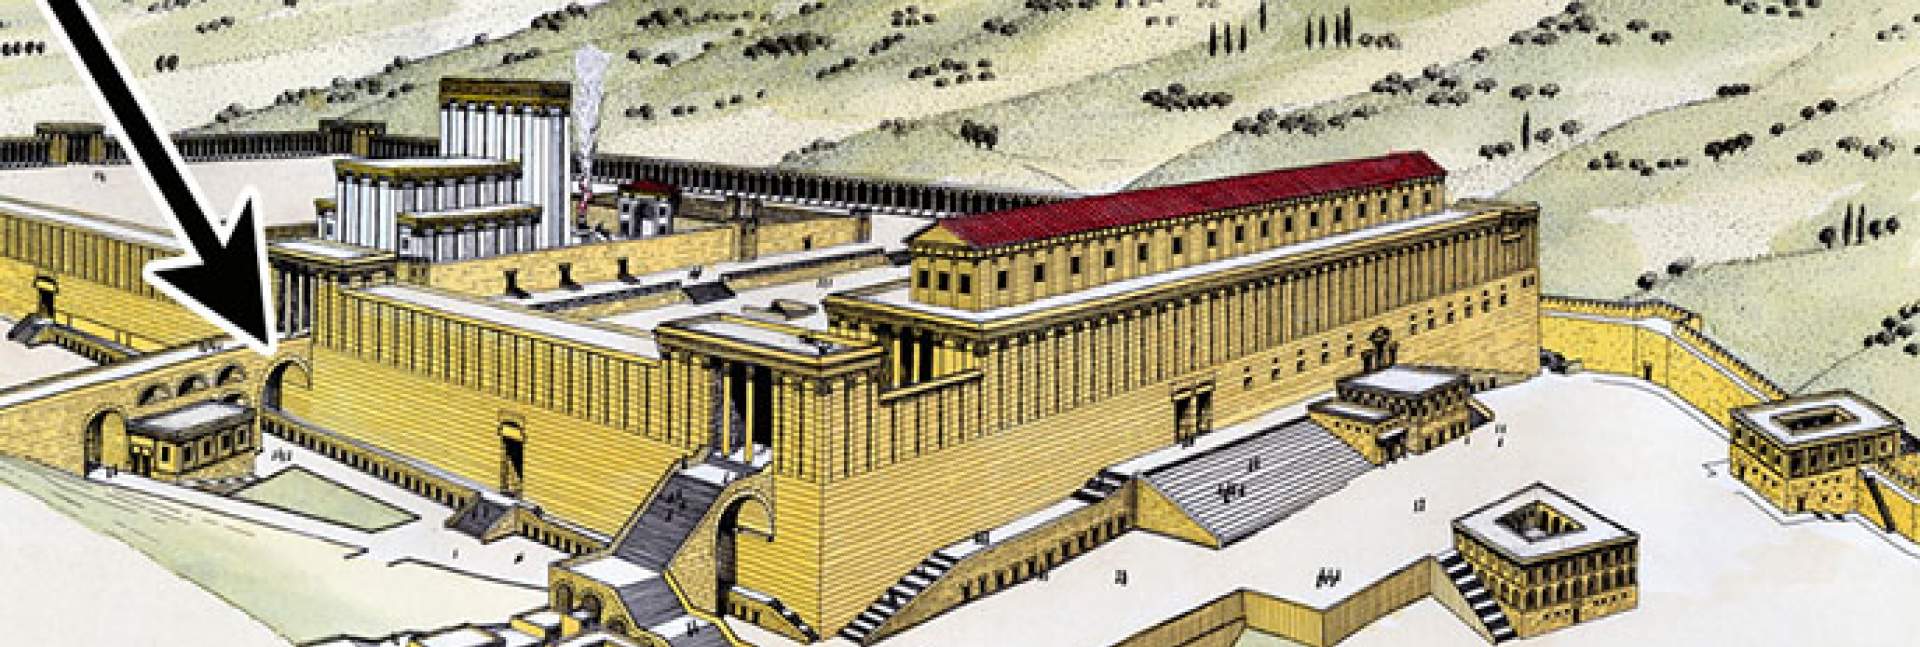 הדמיה של הר הבית בתקופת הורדוס. מסומנת בחץ – קשת וילסון